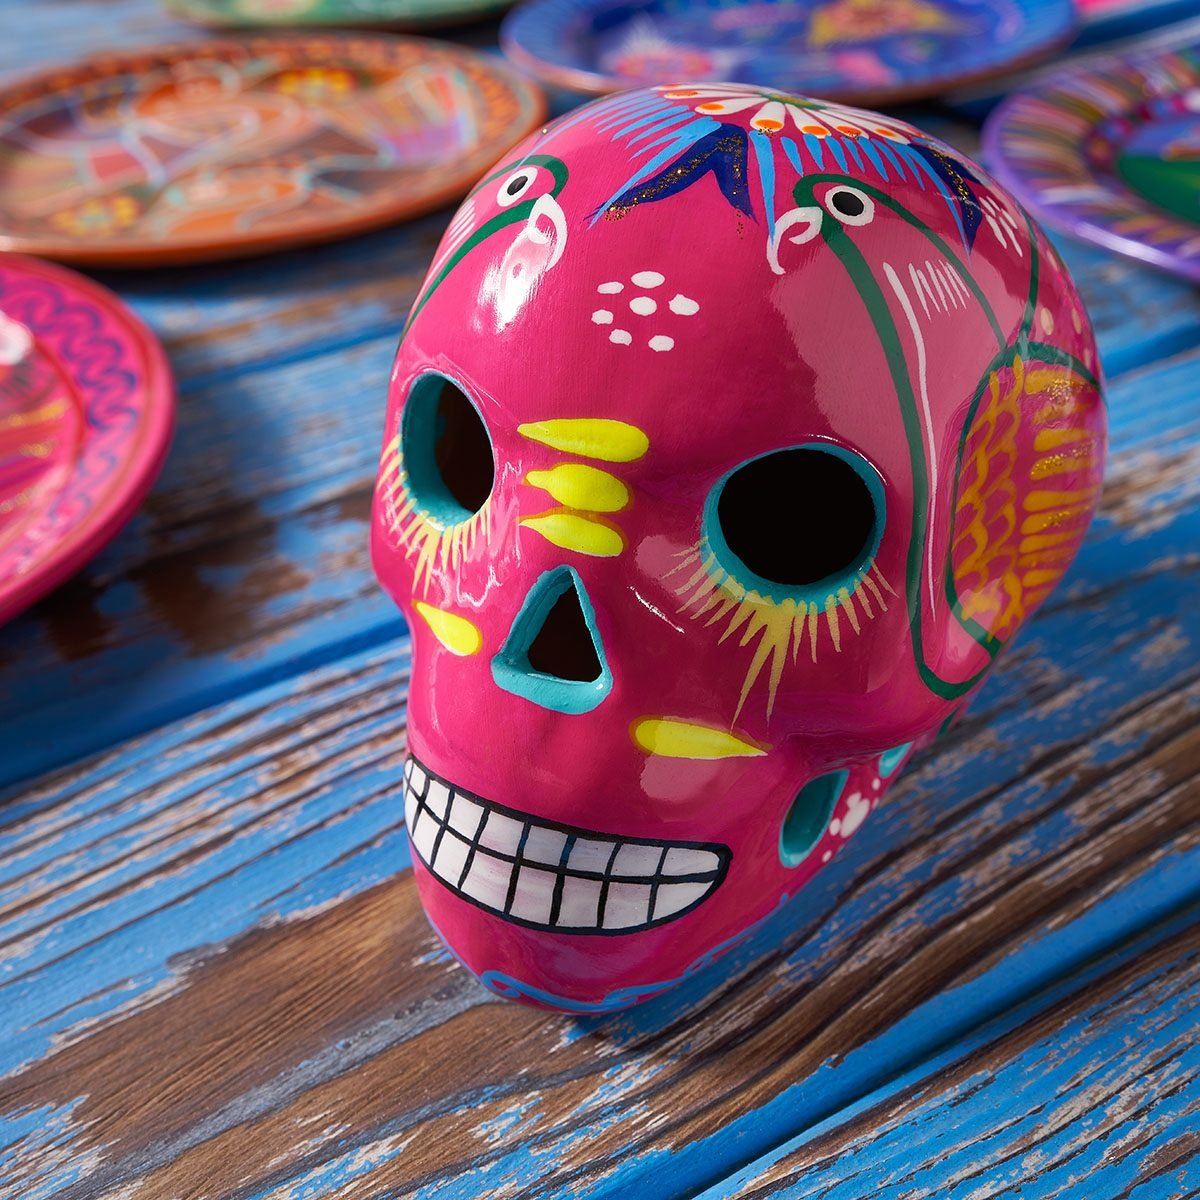 15 Ideas For Dia De Los Muertos Decorations Taste Of Home